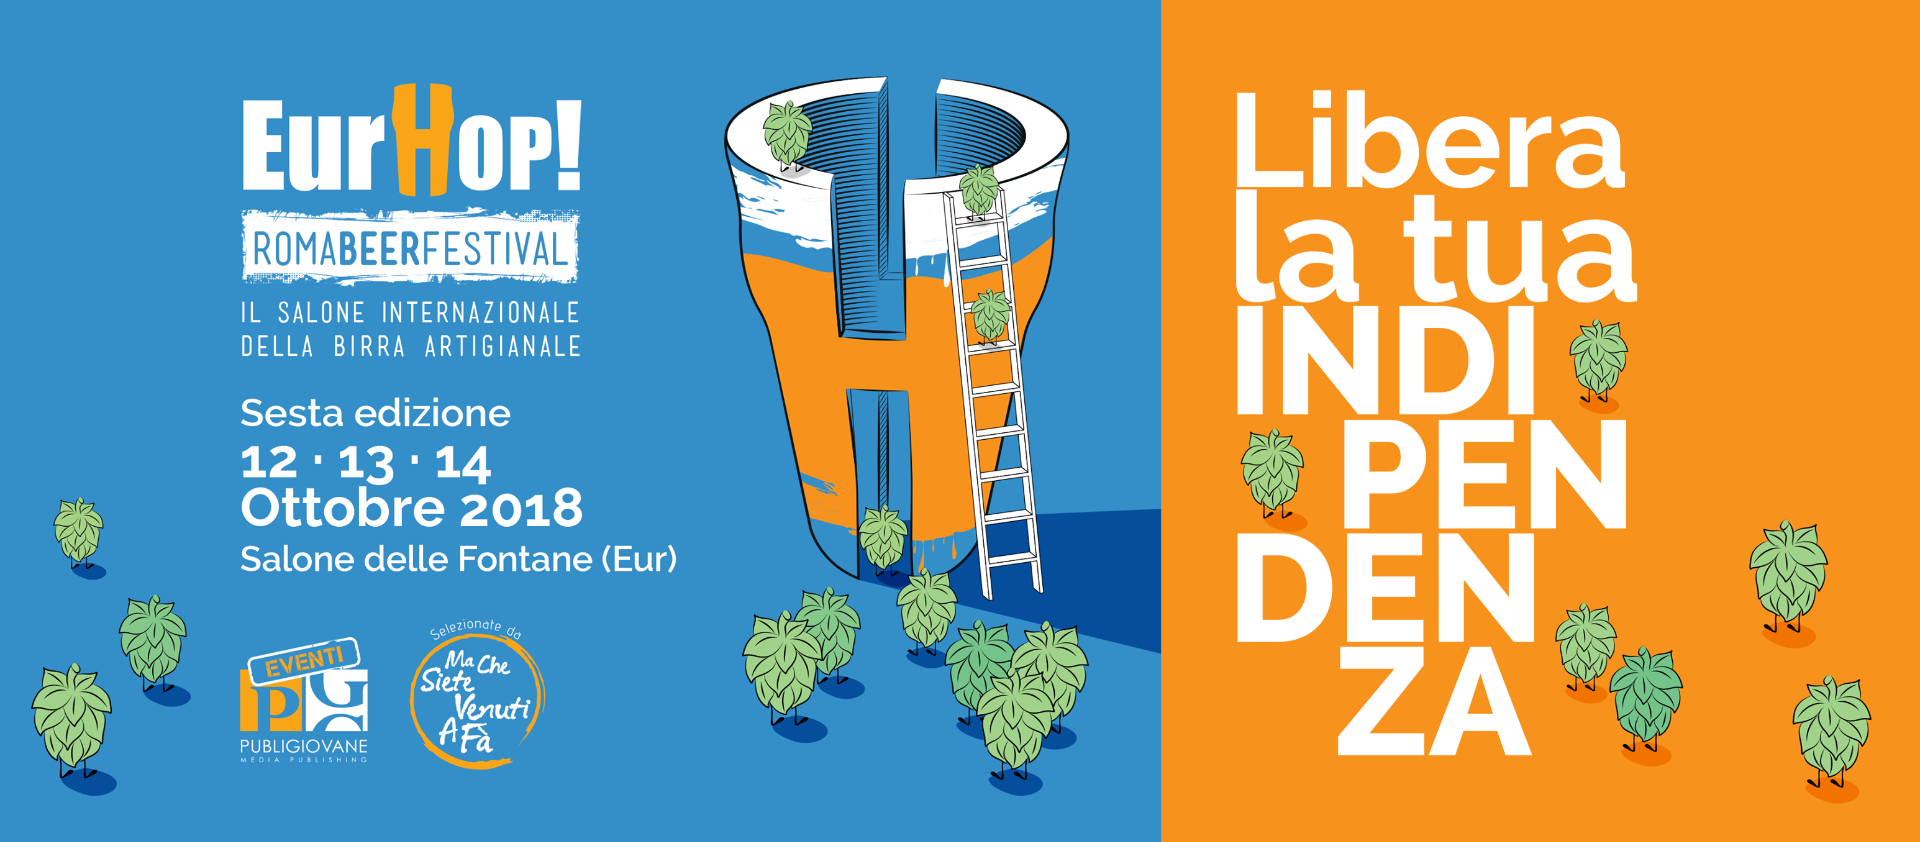 Dal 12 al 14 Ottobre 2018 la sesta edizione di EurHop! Roma Beer Festival